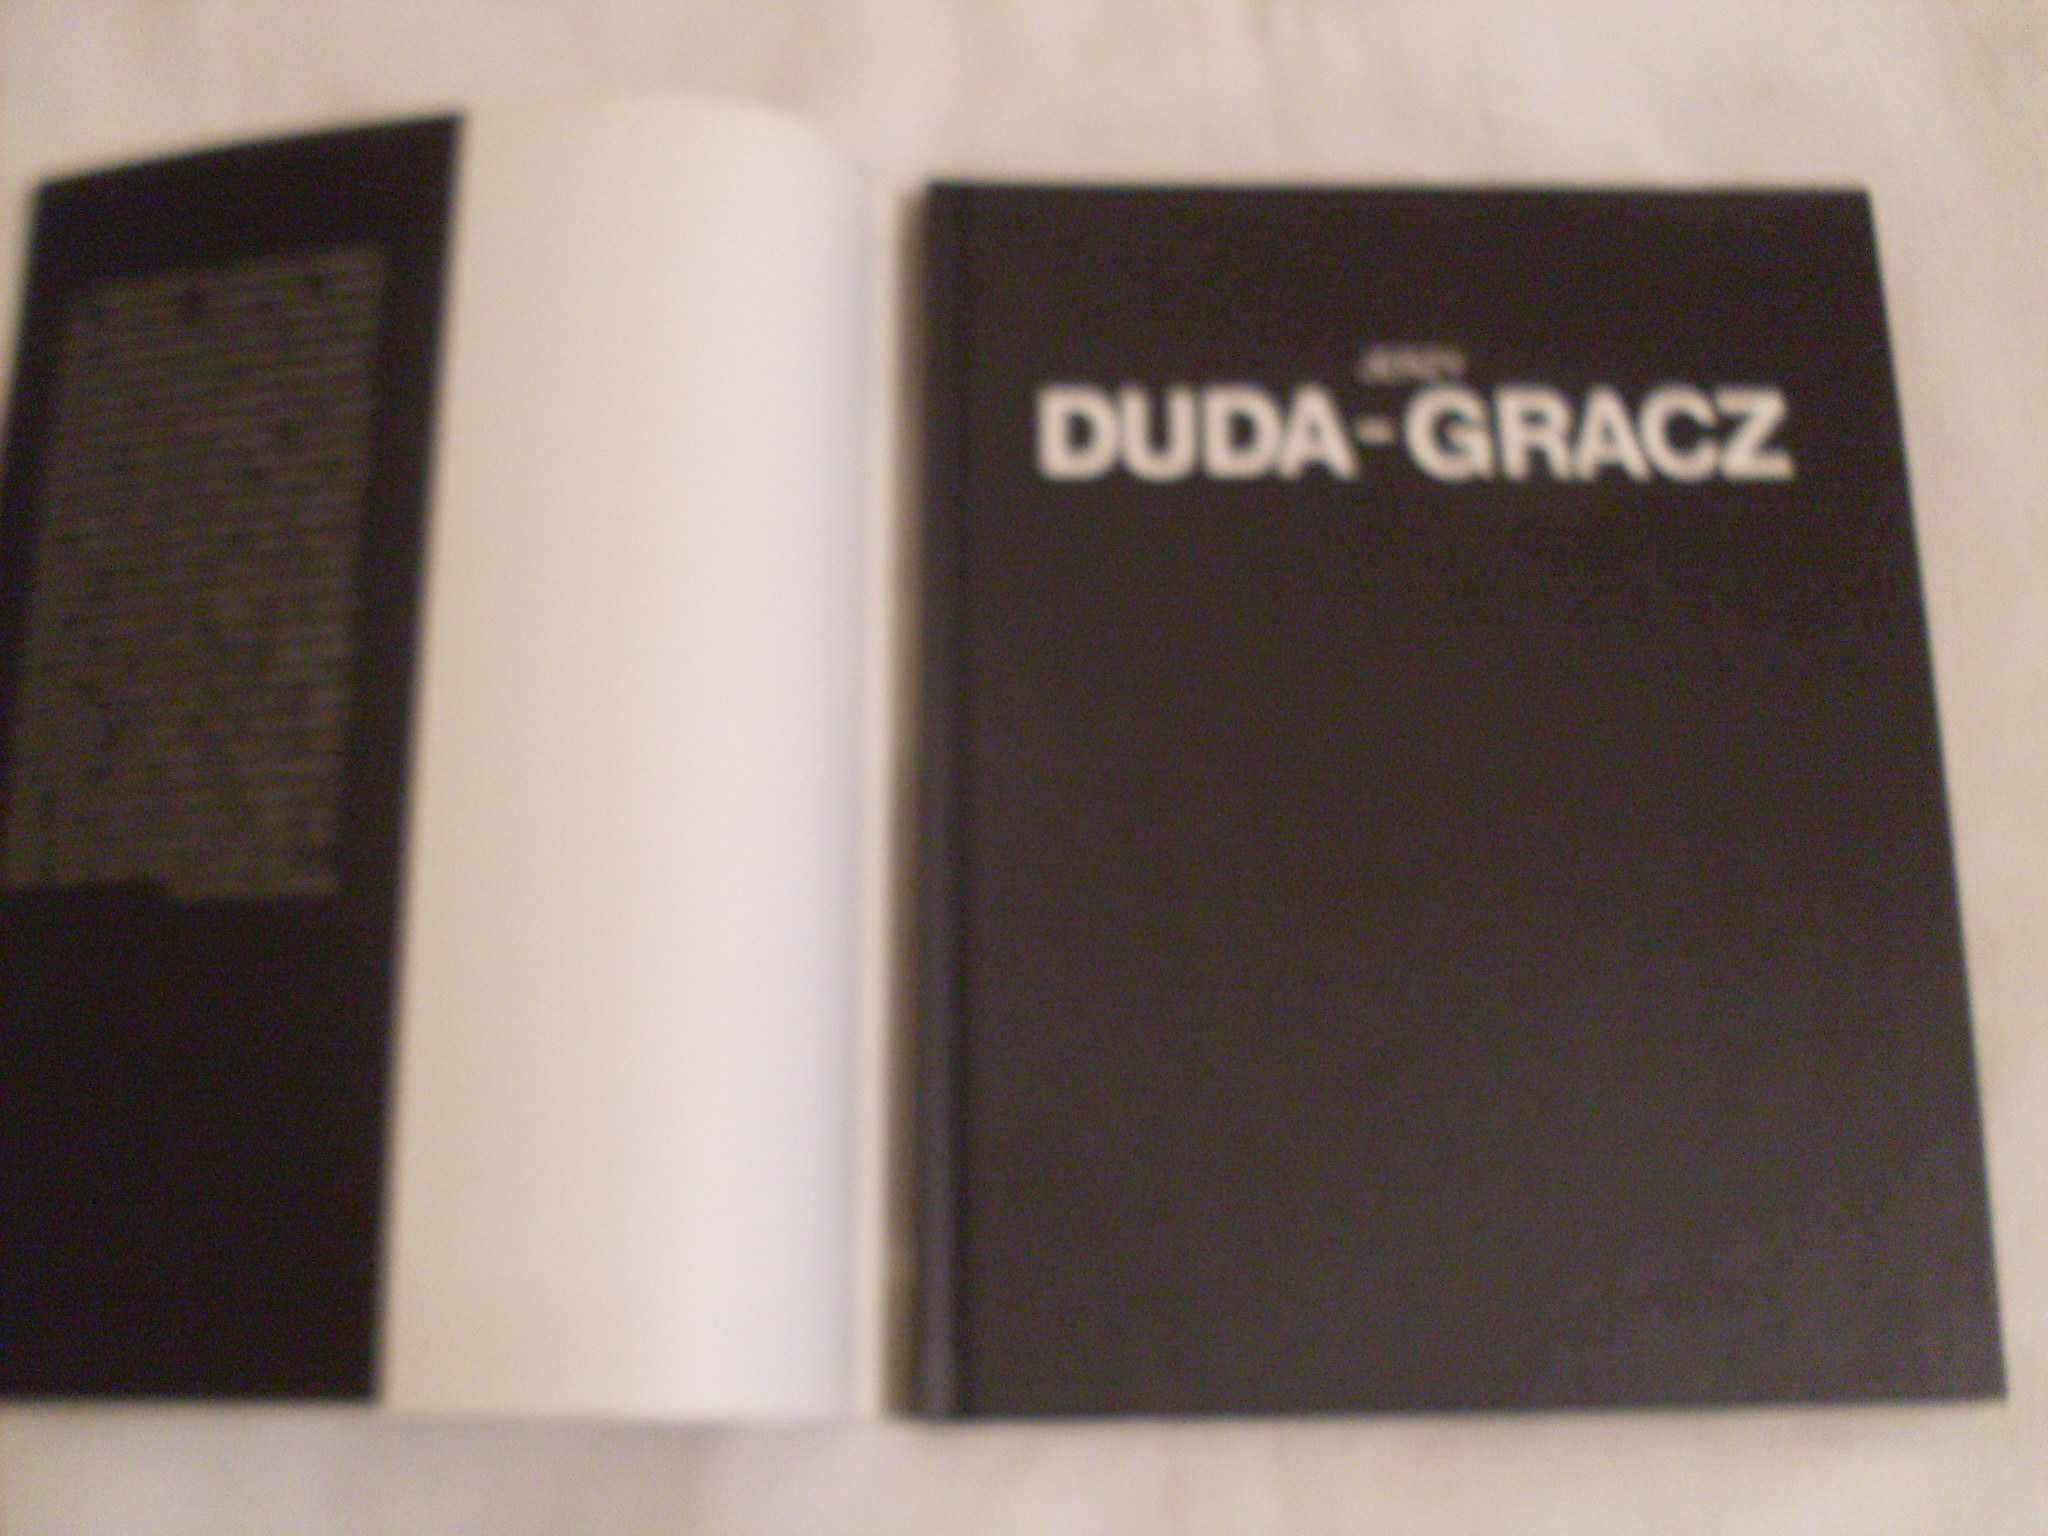 Jerzy Duda - Gracz Album